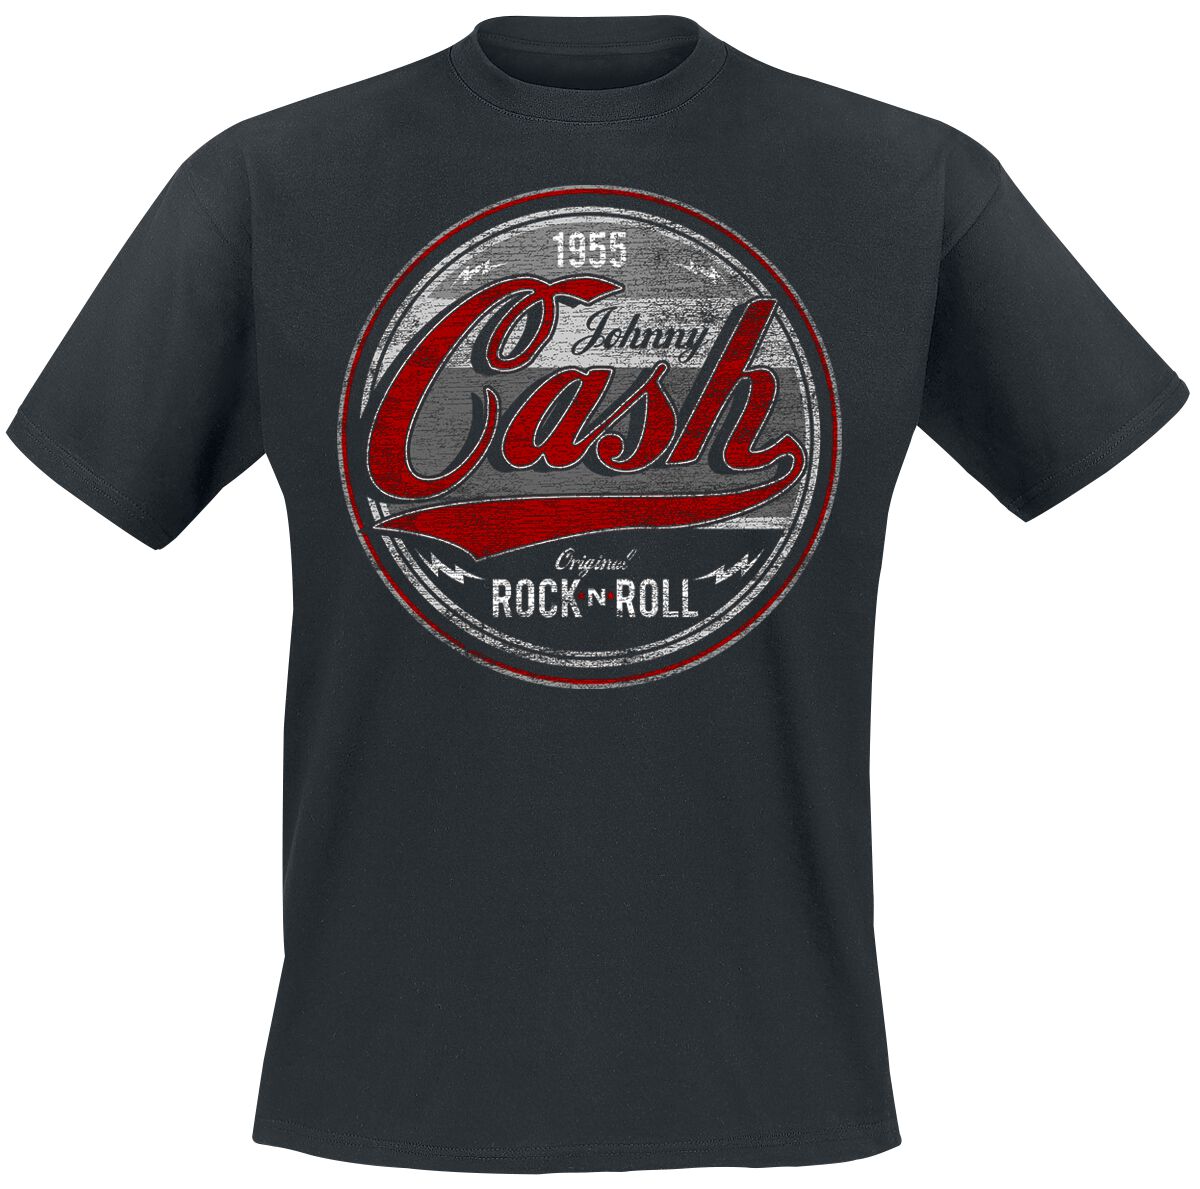 Johnny Cash T-Shirt - Original Rock n Roll Red/Grey - S bis 4XL - für Männer - Größe 3XL - schwarz  - Lizenziertes Merchandise!